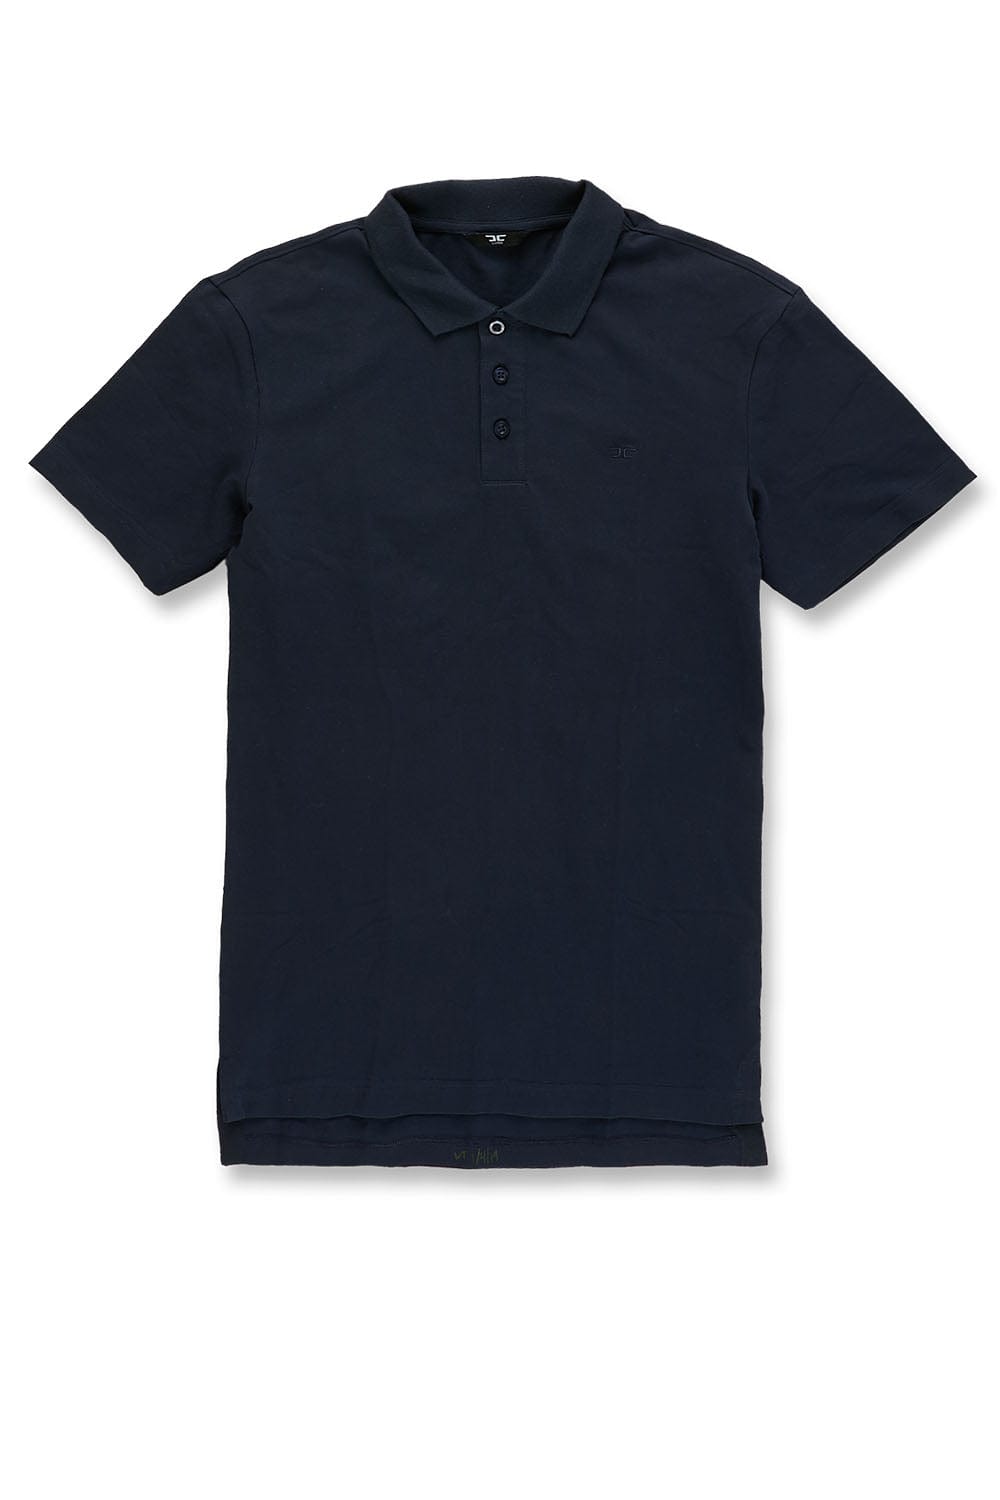 Premium Pique Polo Shirt (Navy)